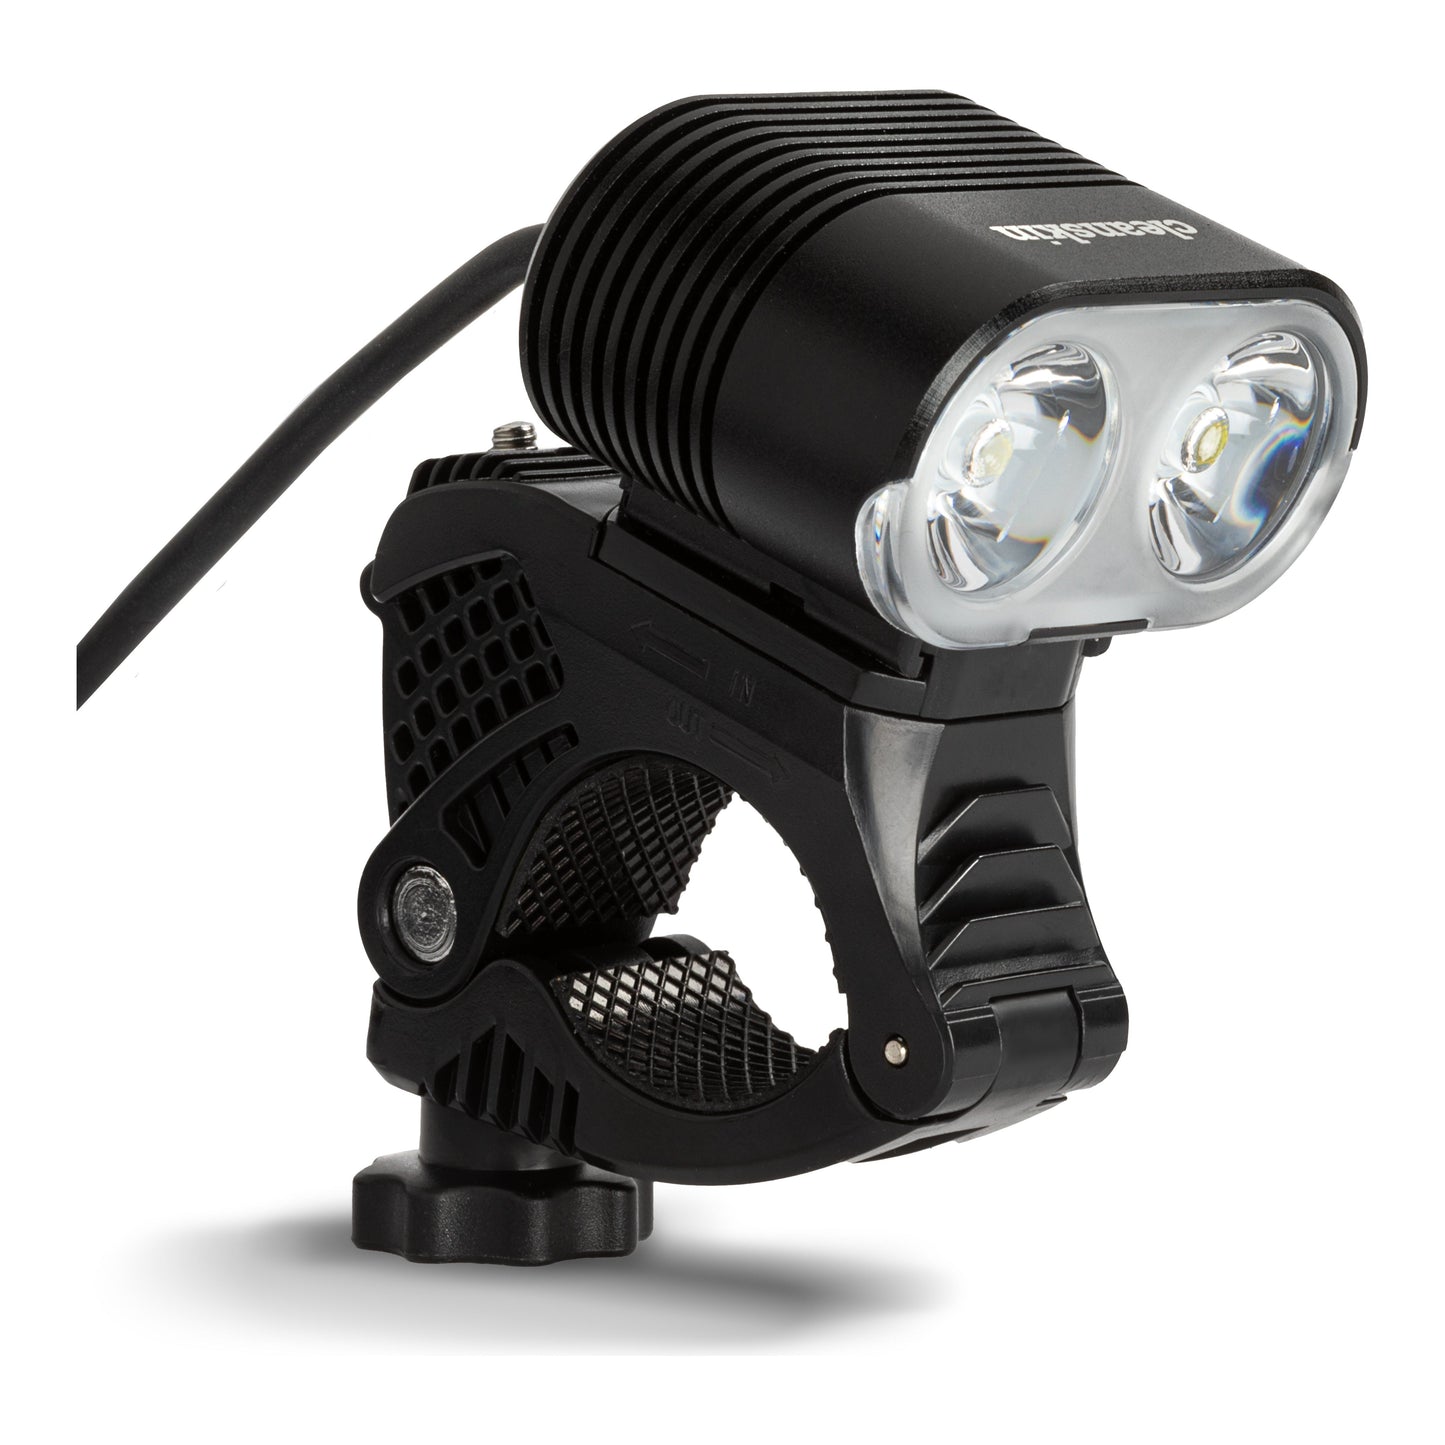 Cleanskin Duo V2 2200 Lumen Front LED Light - With GoPro Mount - Neoprene Case